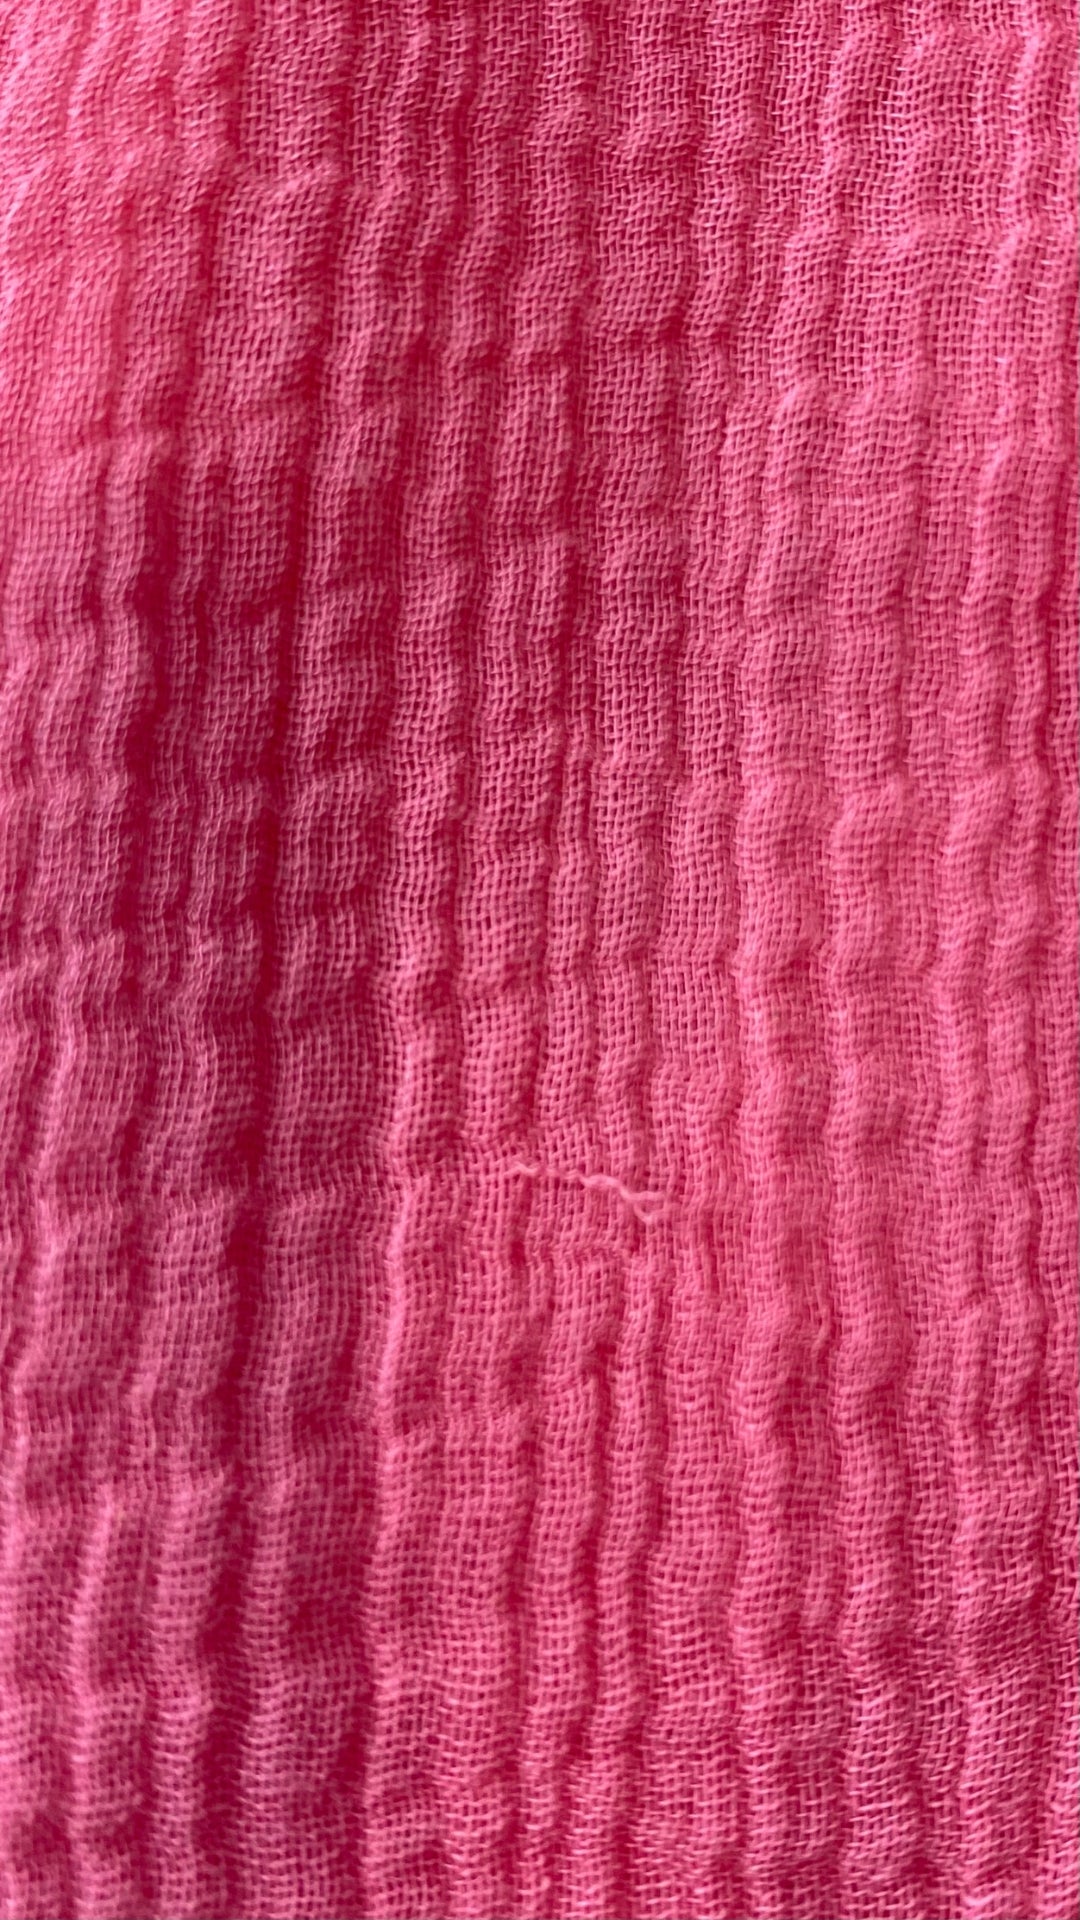 Blouse gaze de coton rose Tommy Bahama, taille small. Vue de petit fil tiré.